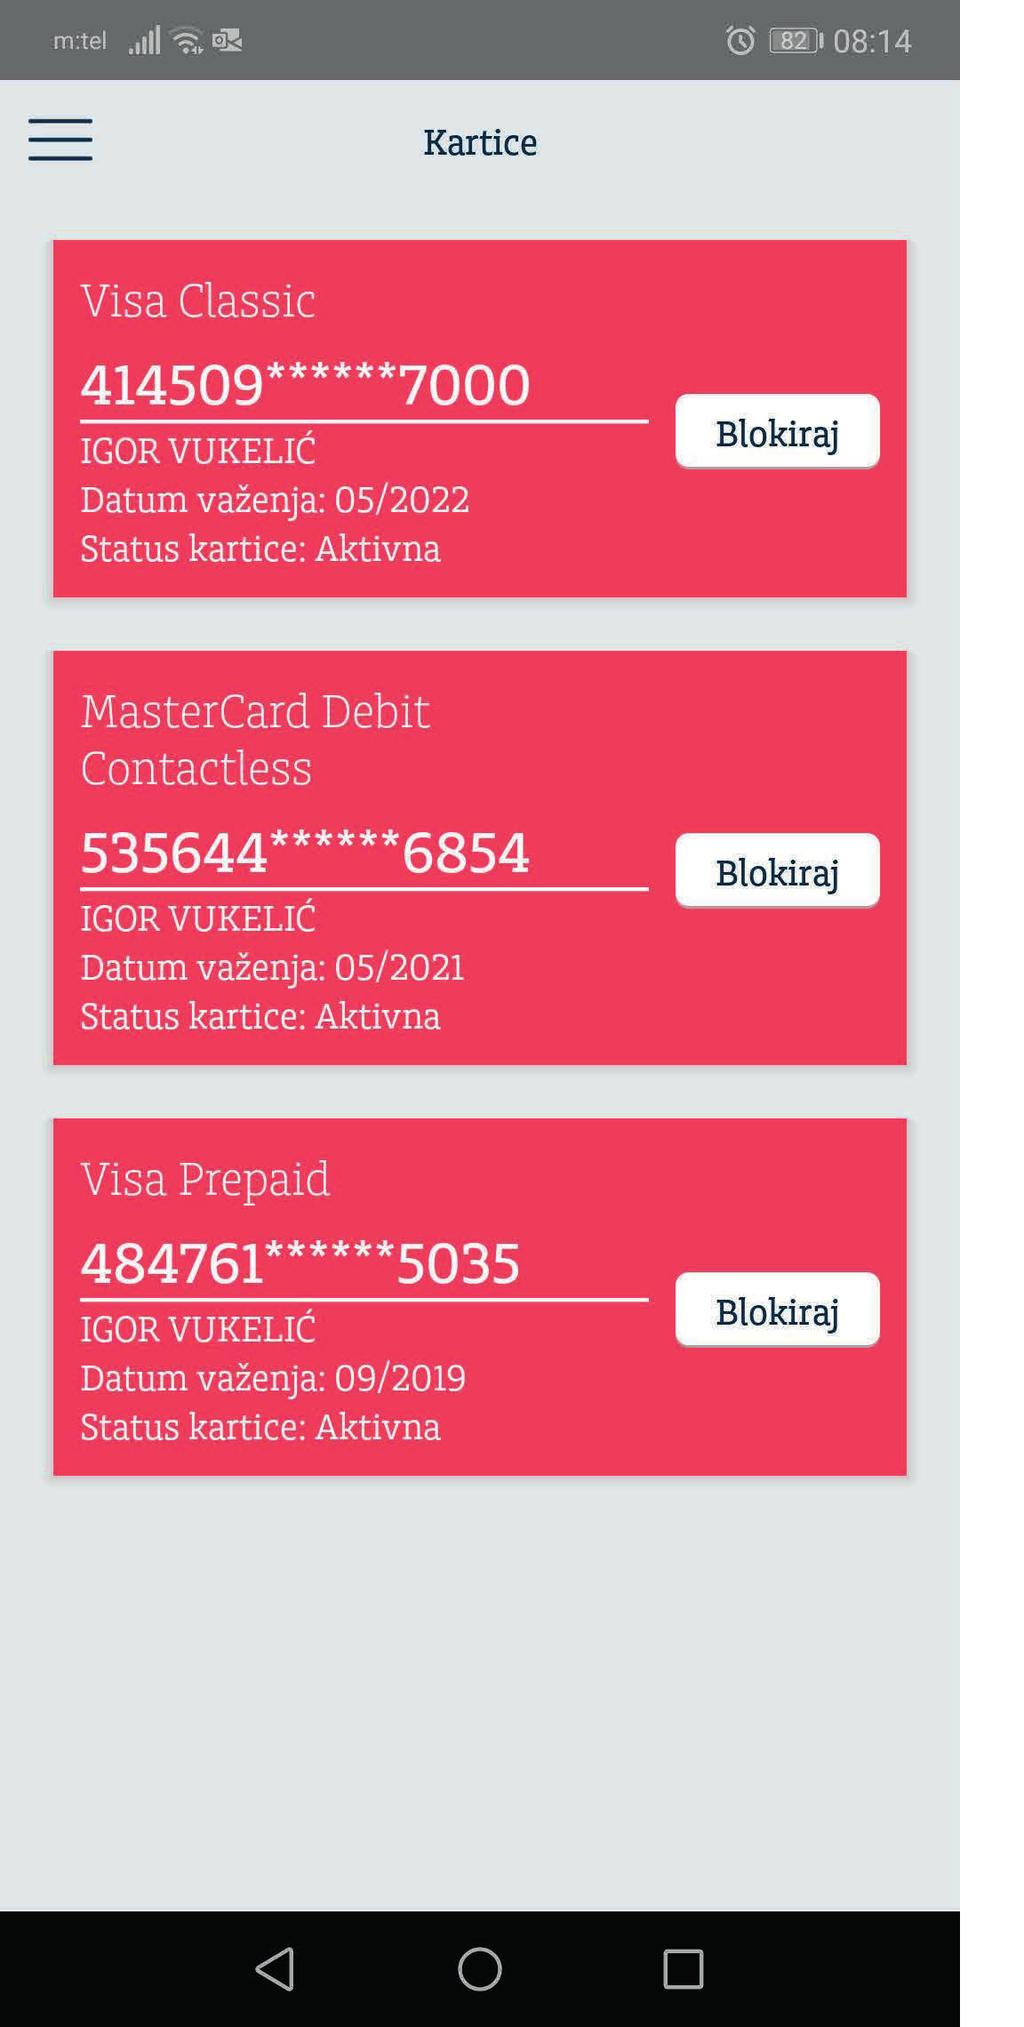 Kartice Nova funkcionalnost usluge Addiko Mobile, omogućava Vam pregled vaših platnih kartica te podjelu na rate